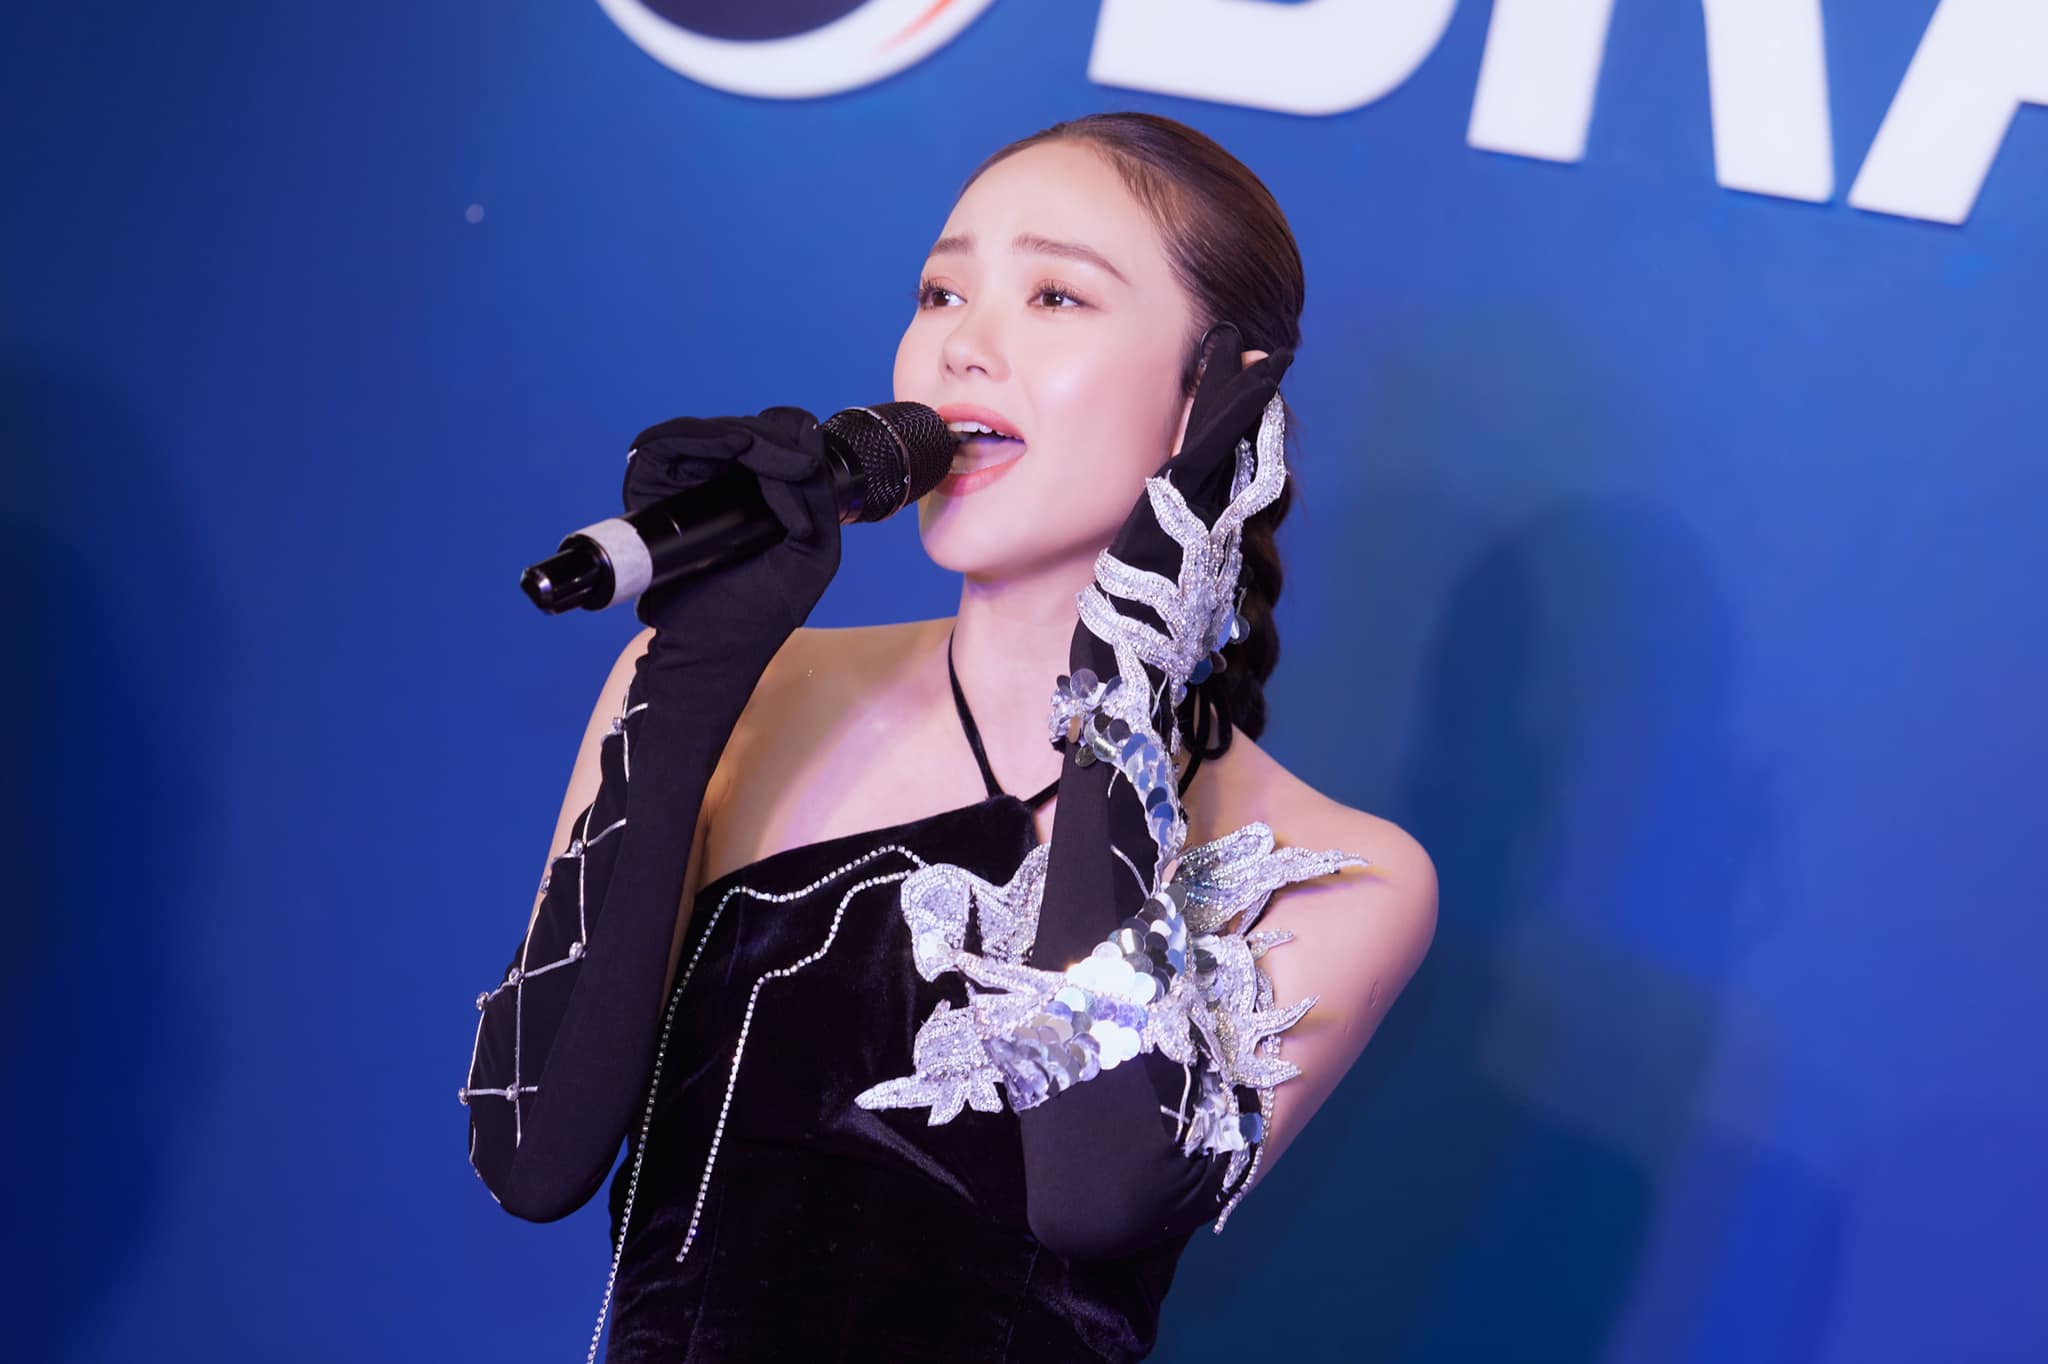 Minh Hằng bảo mặc áo dài Việt Nam khi hát cho người Hàn, netizen thắc mắc Đây là áo yếm mà?